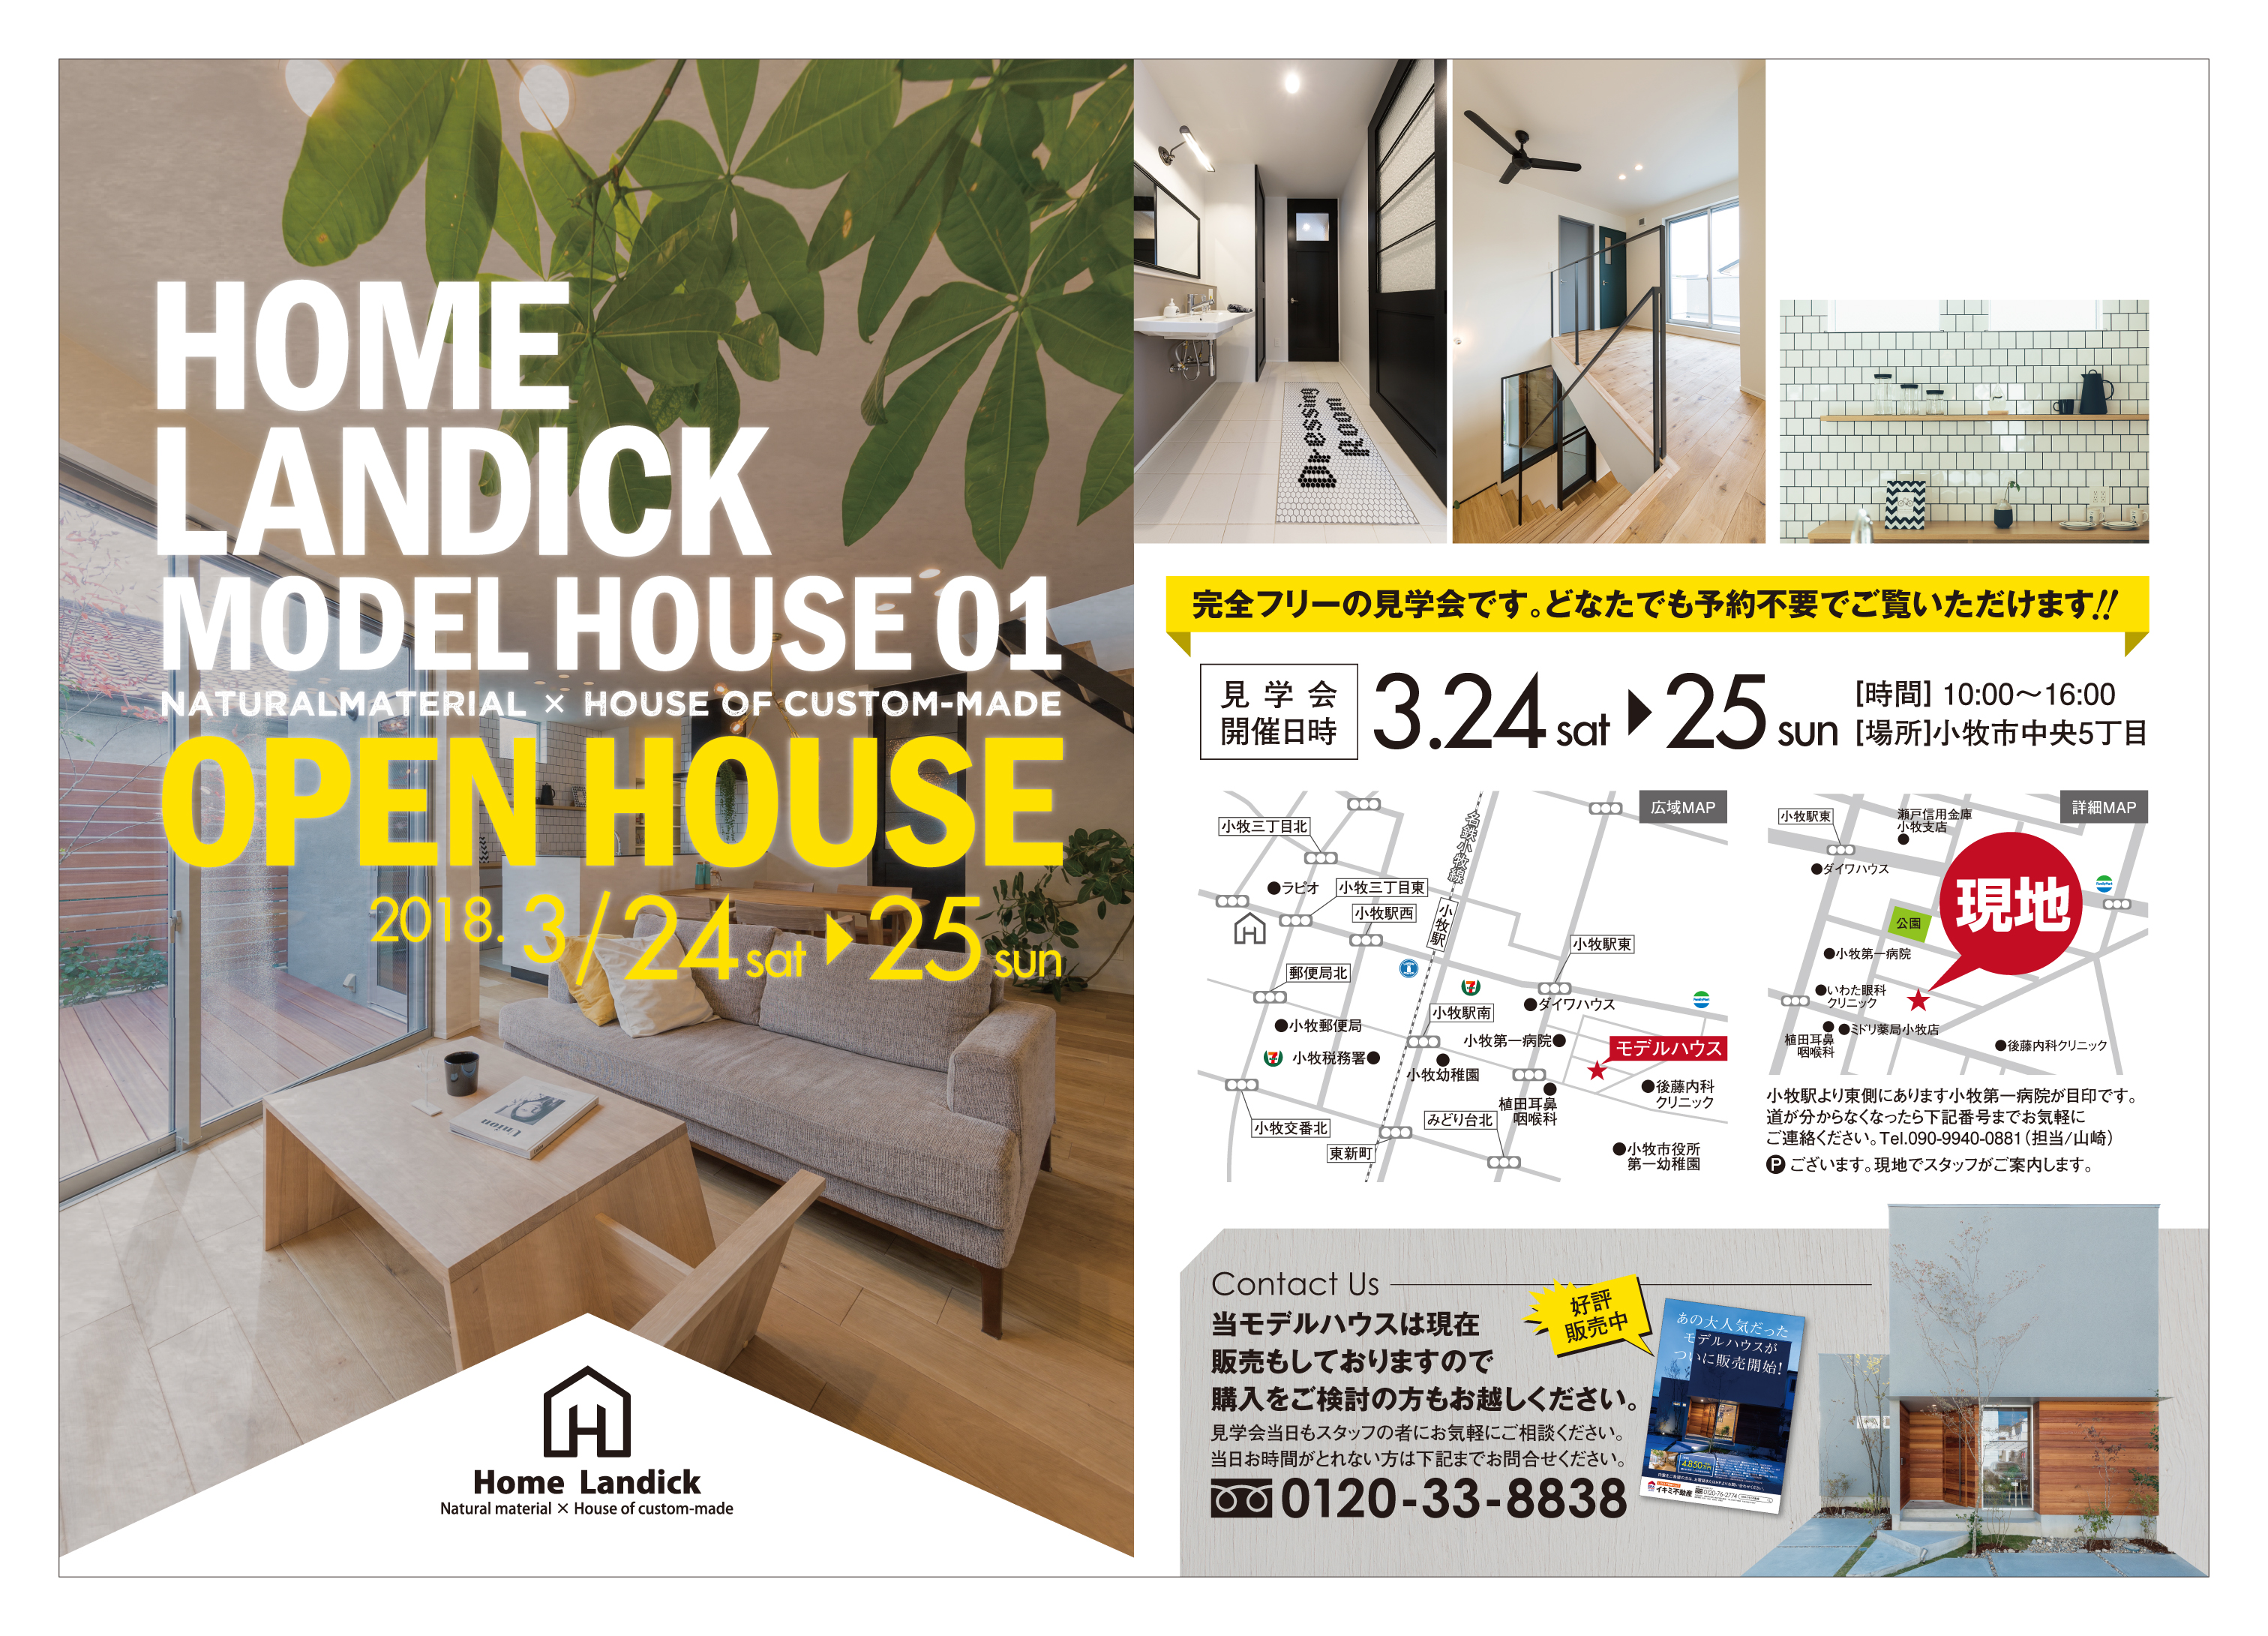 モデルハウス見学会チラシ 愛知県のデザイン設計事務所はホームランディック一級建築士事務所